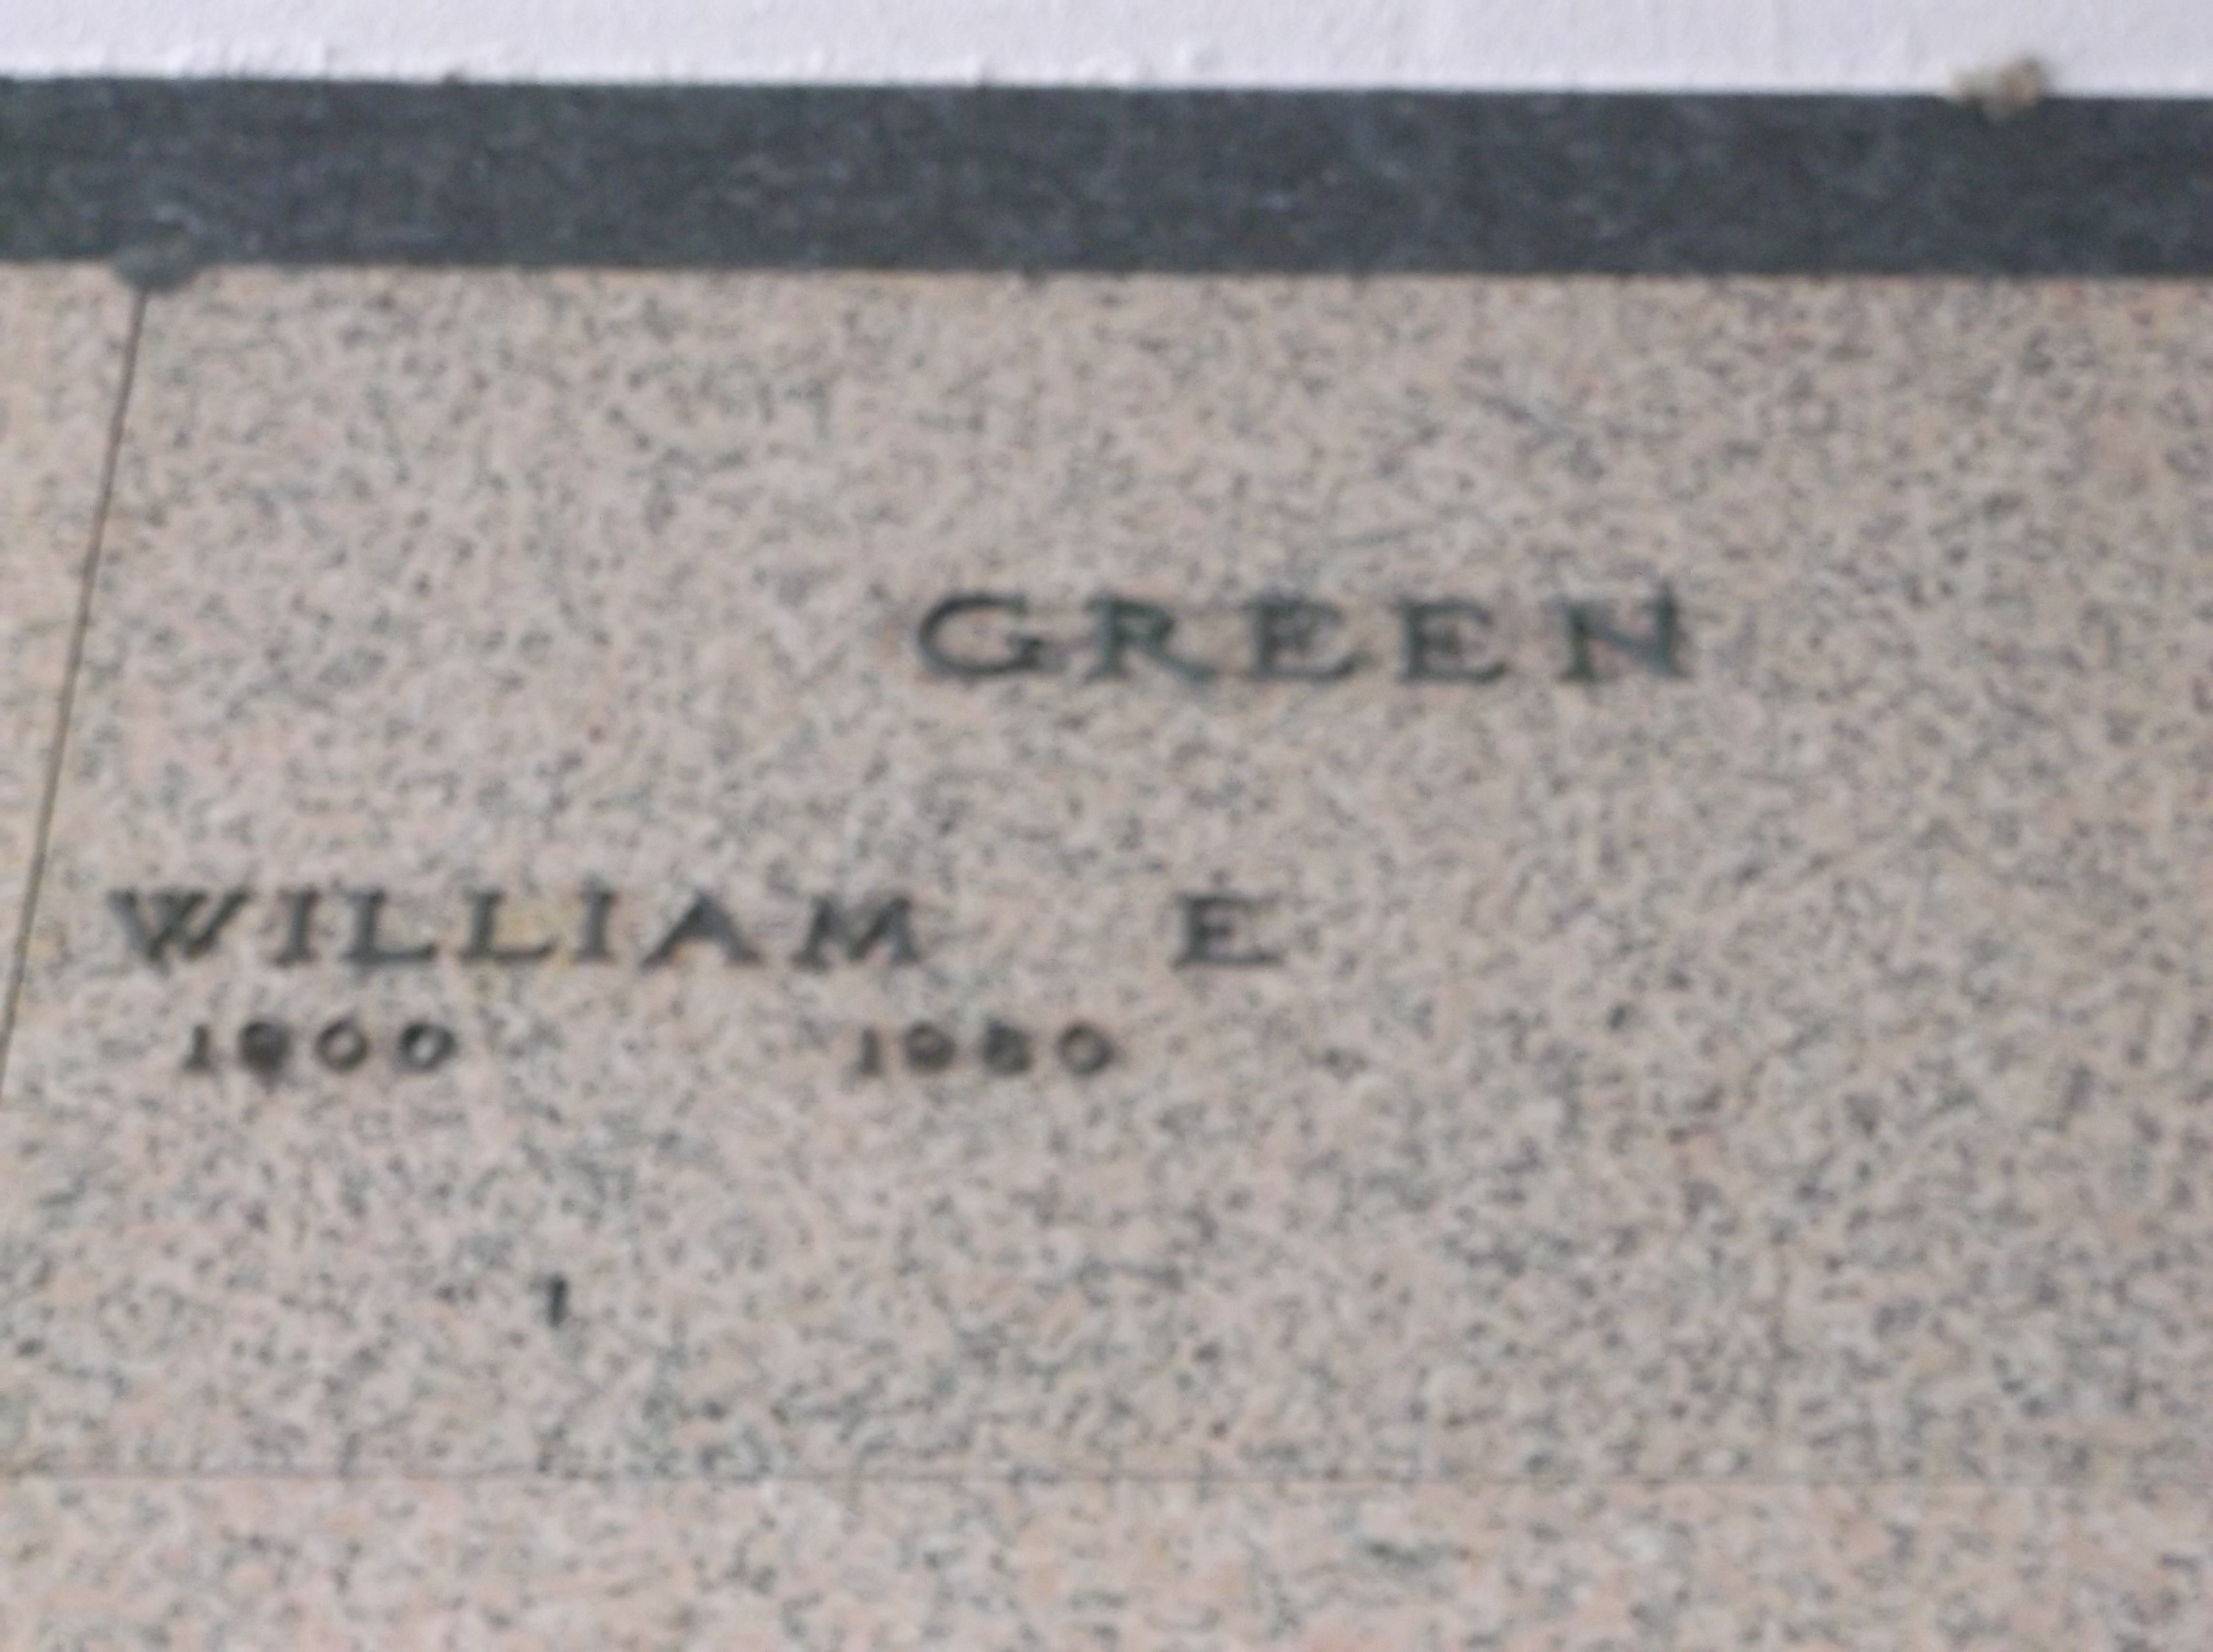 William E Green